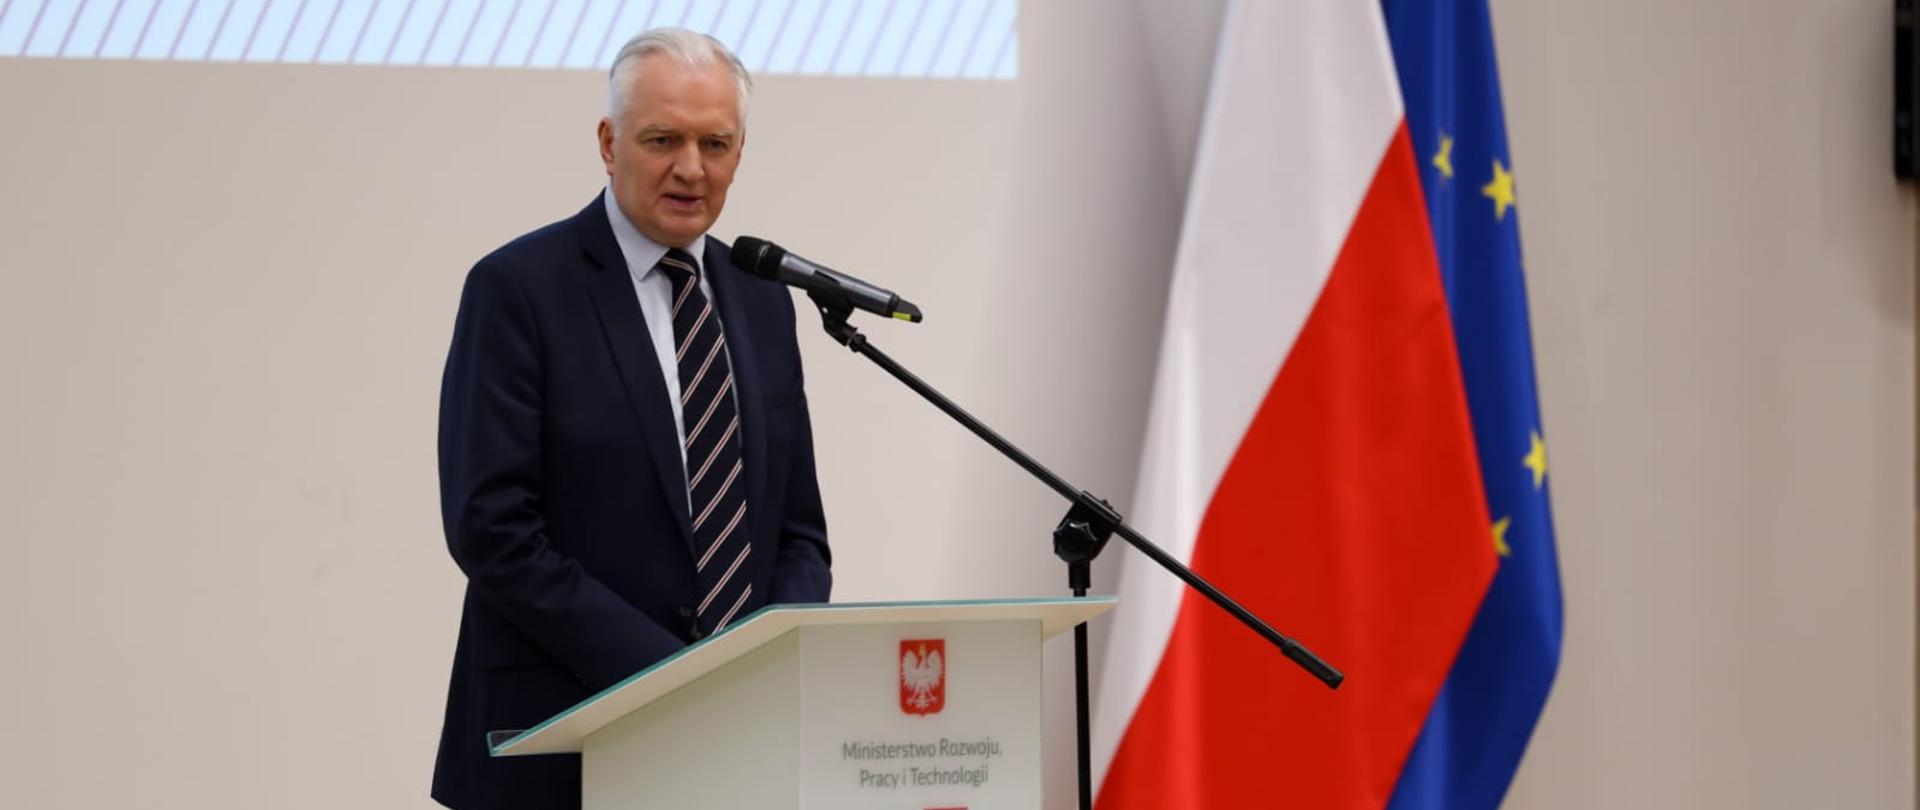 Wicepremier Jarosław Gowin przemawia za mównicą podczas spotkania z samorządowcami budującymi SIM
